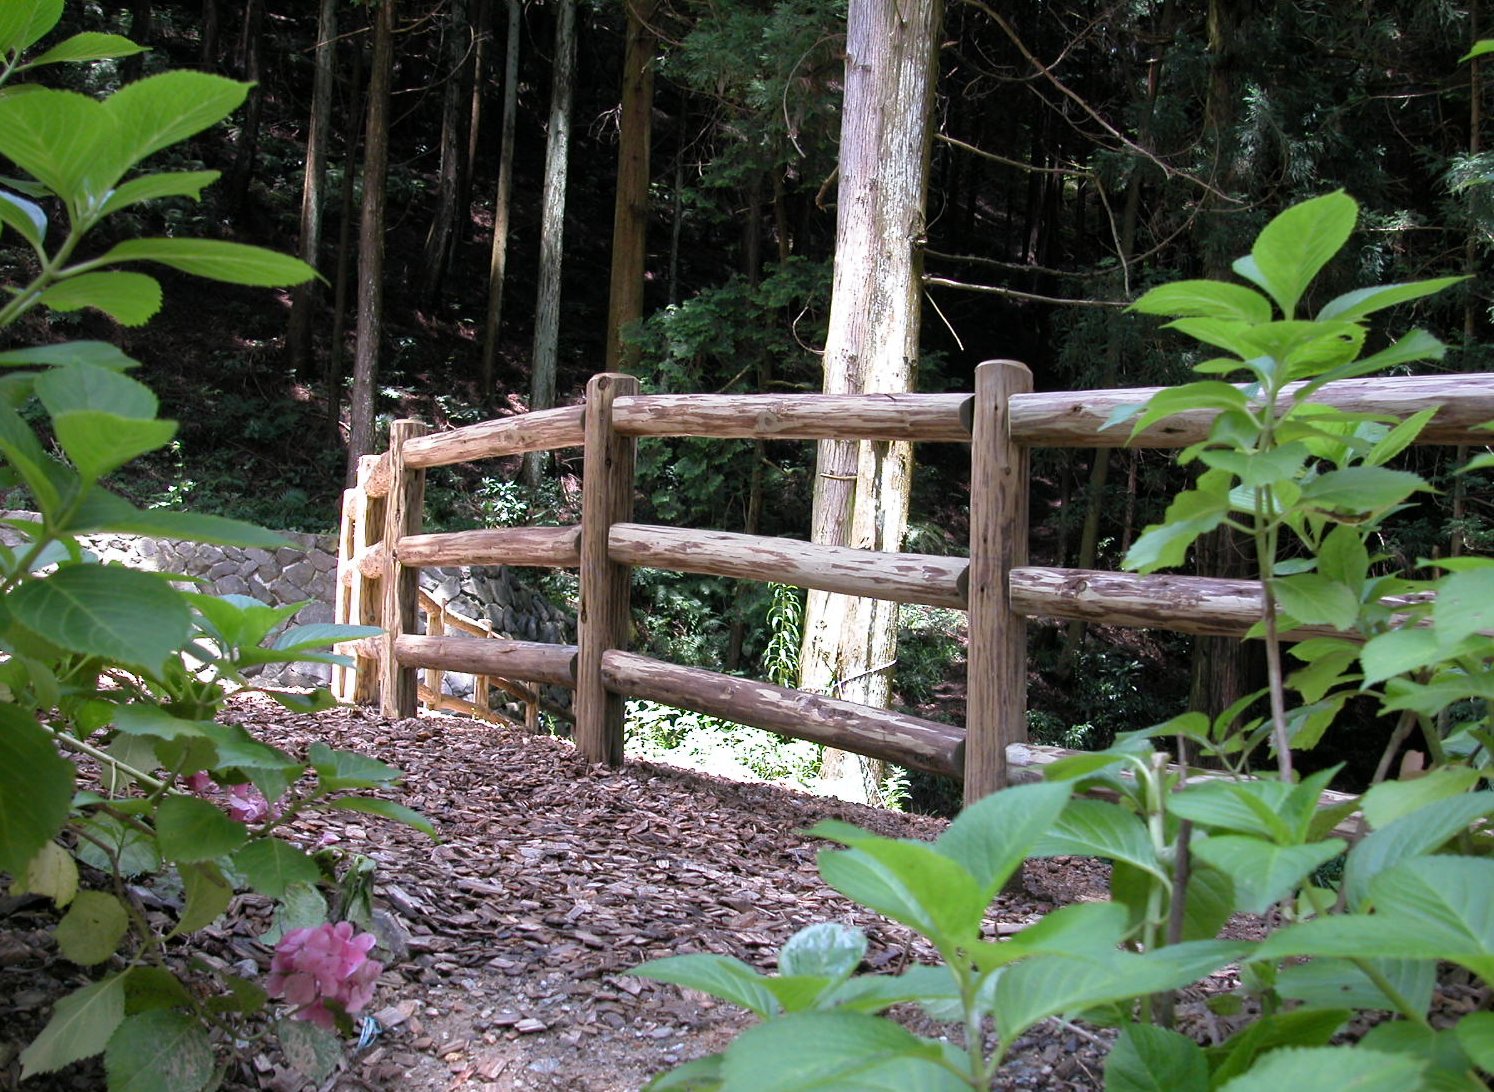 木製フェンス|中川木材産業